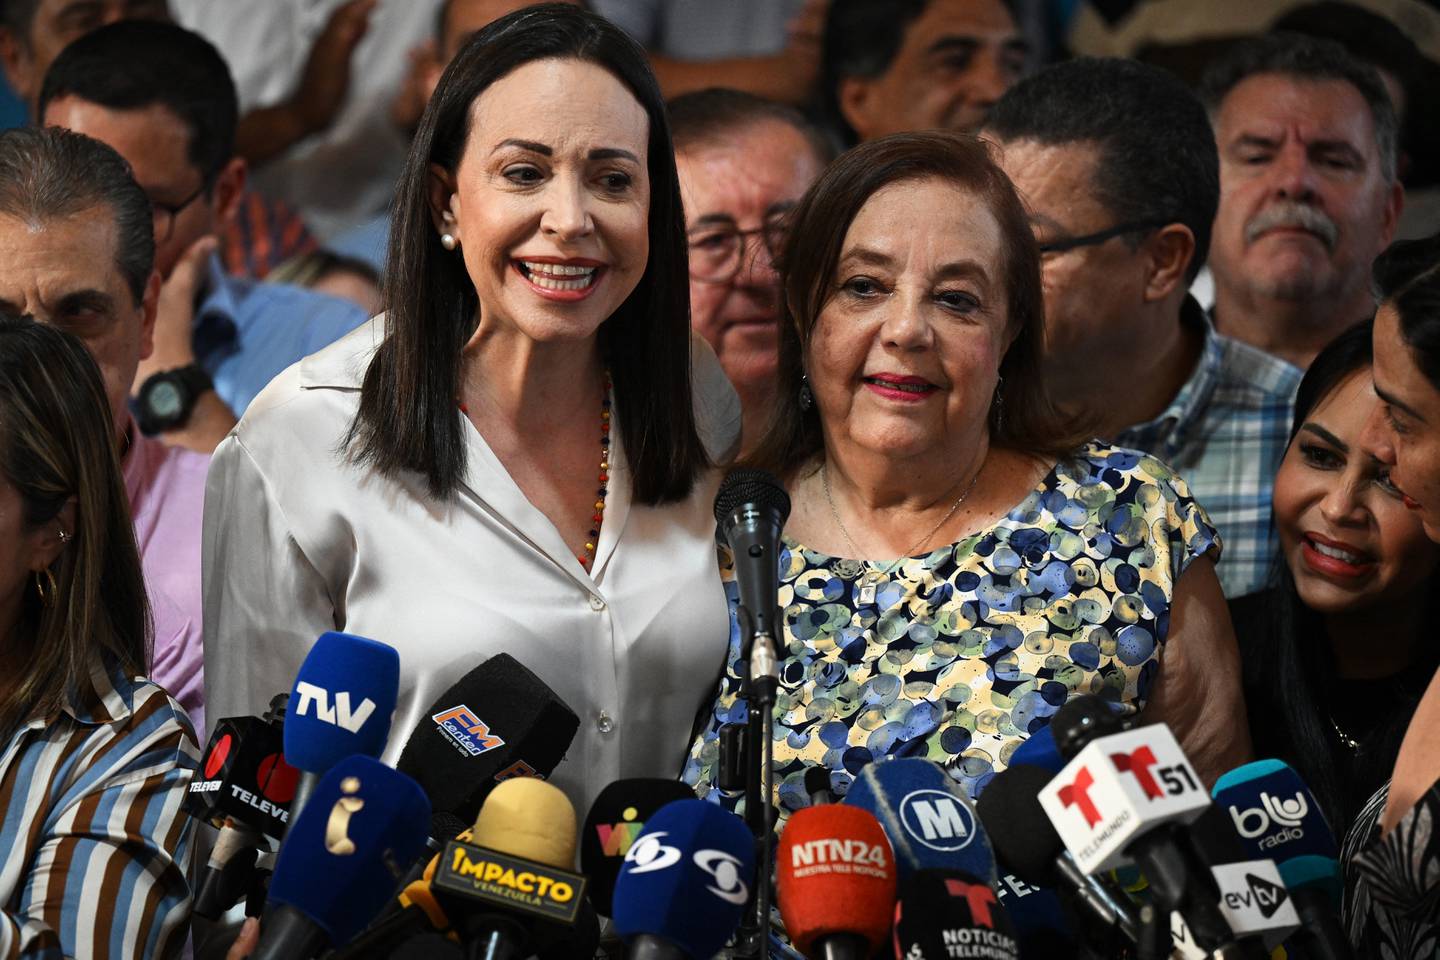 La líder opositora venezolana María Corina Machado (izq) presentó a su reemplazante para las próximas elecciones nacionales, Corina Yoris (d), durante una conferencia de prensa en Caracas.